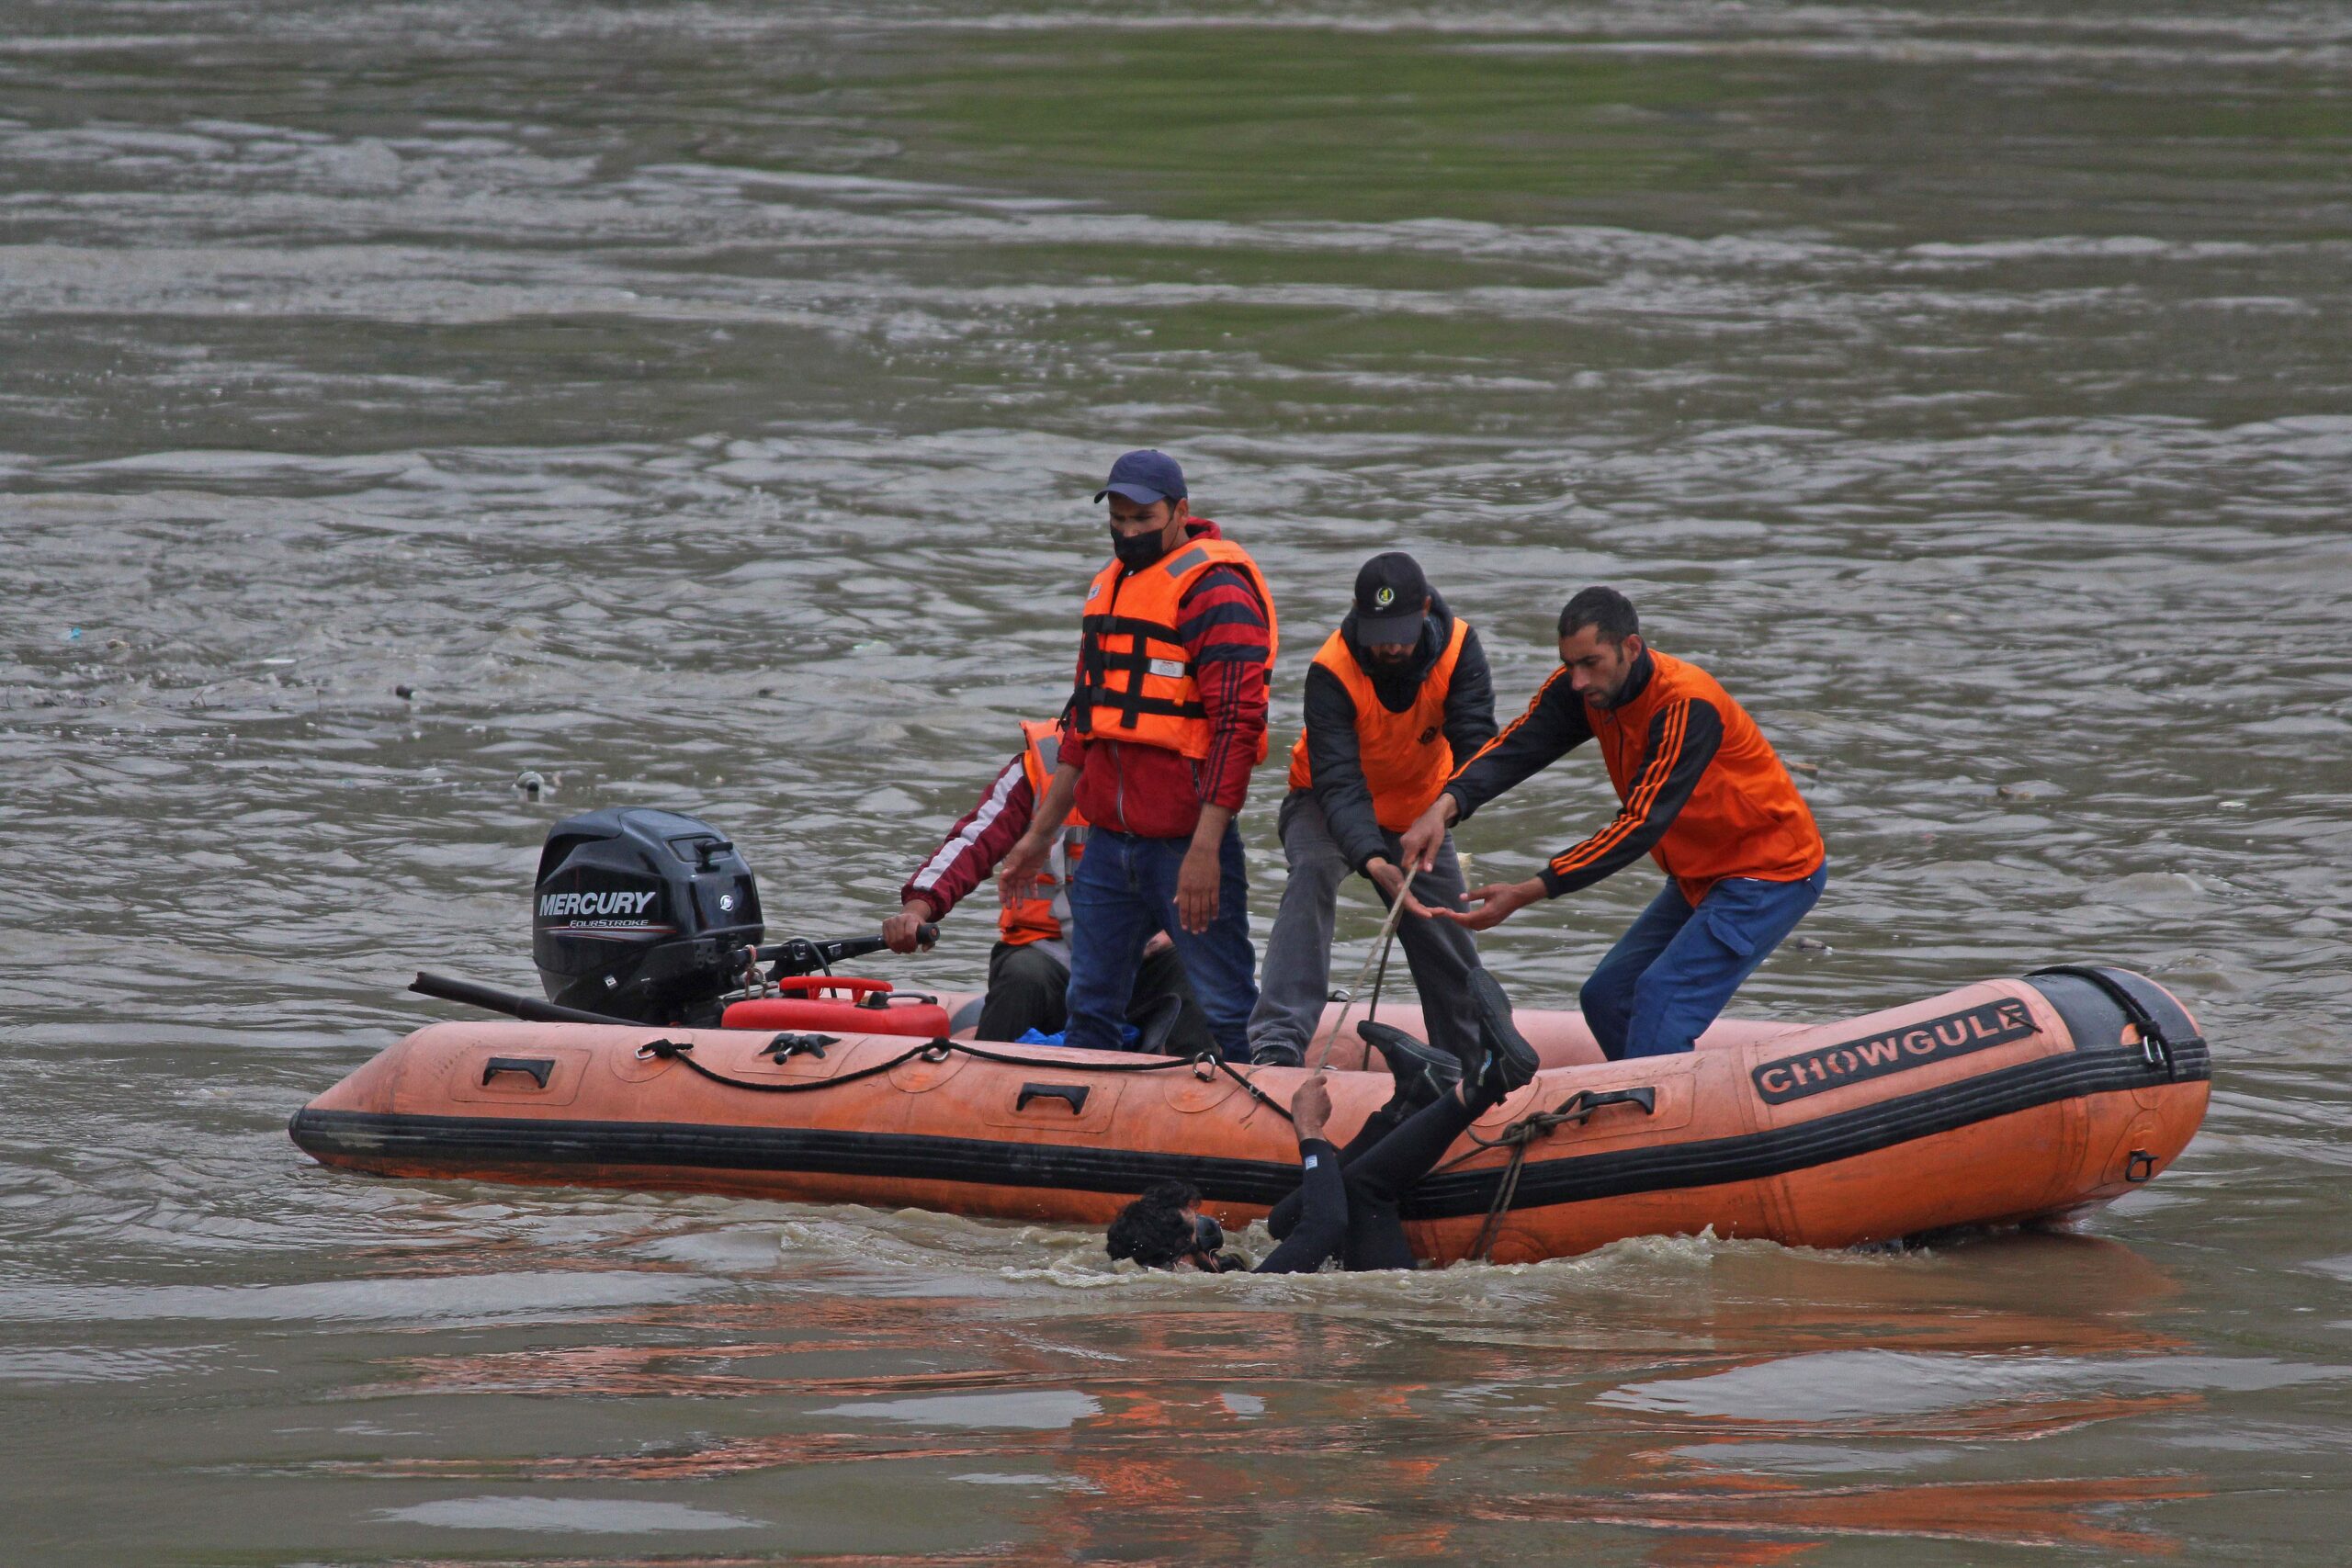 Boat capsizes in Jhelum river in J-K, 4 dead